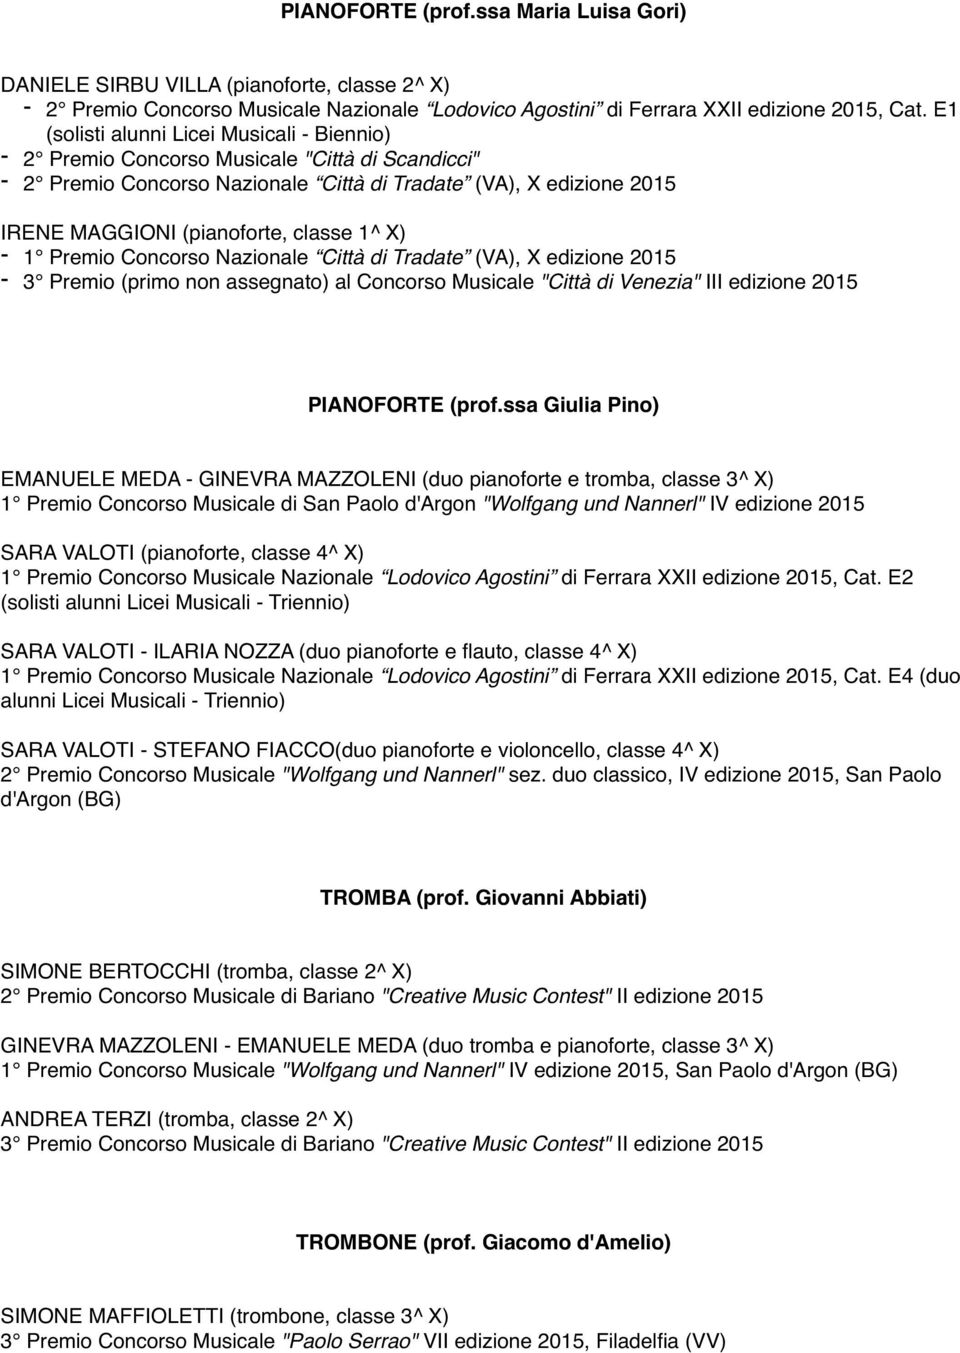 Tradate (VA), X edizione 2015-3 Premio (primo non assegnato) al Concorso Musicale "Città di Venezia" III edizione 2015 PIANOFORTE (prof.